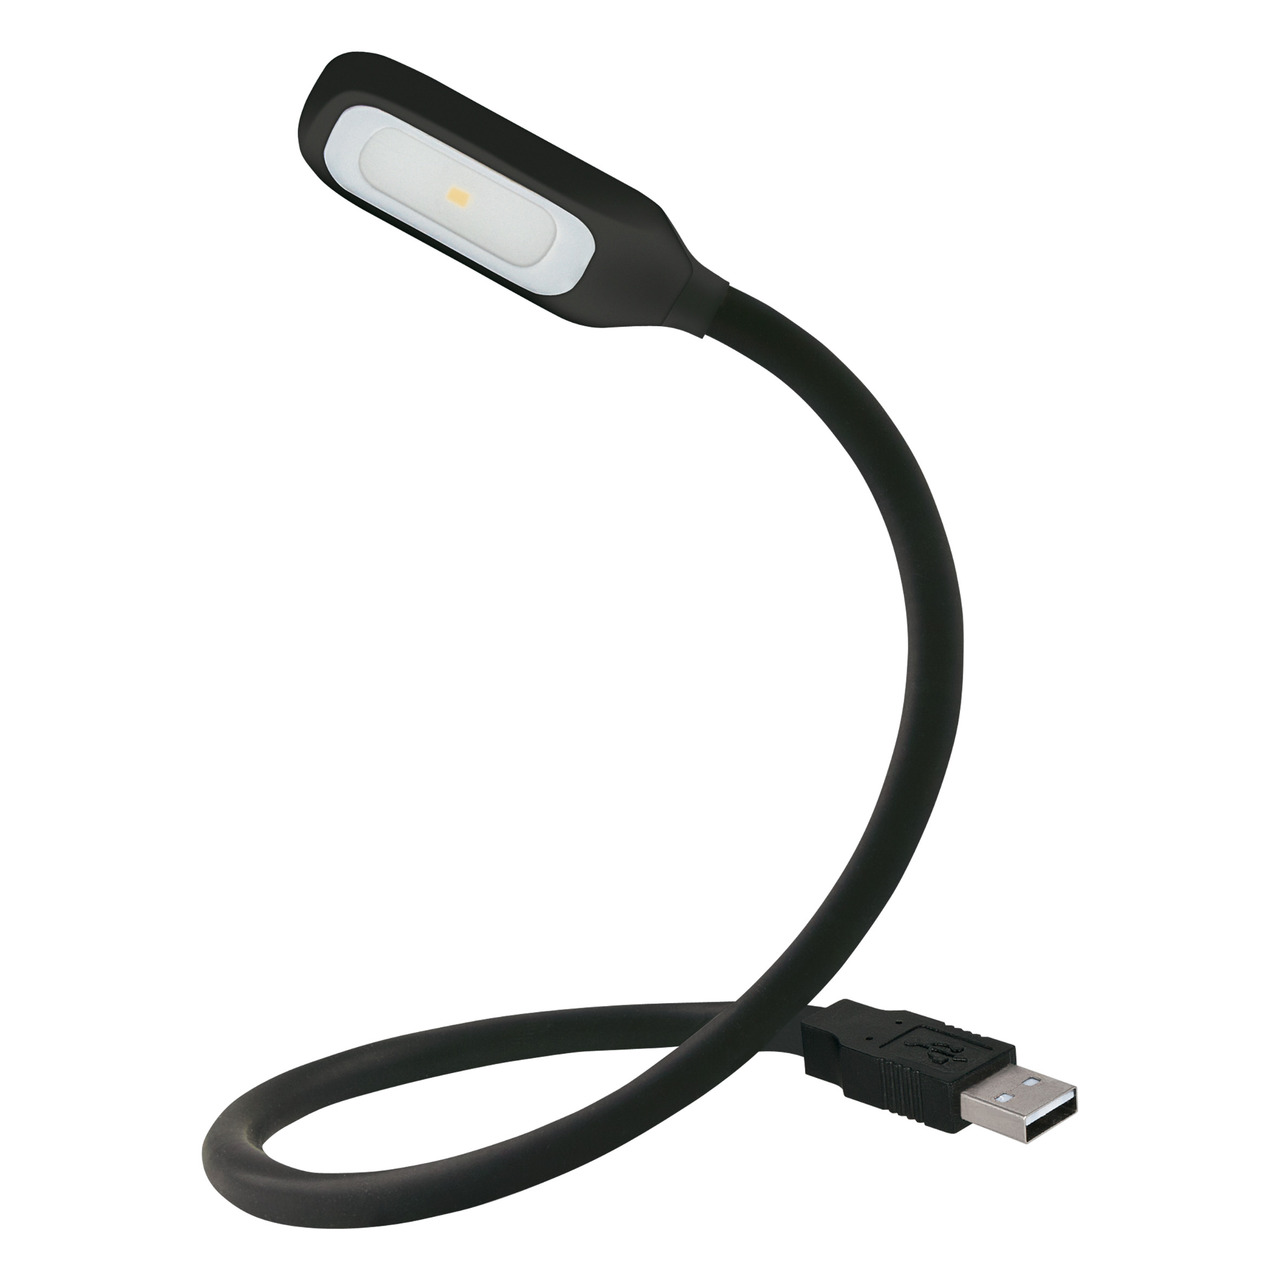 OSRAM LED-Lese- und Orientierungsleuchte ONYX USB- biegsamer Leuchtenhals- 18 lm- USB-Anschluss unter Freizeit- und Outdoortechnik